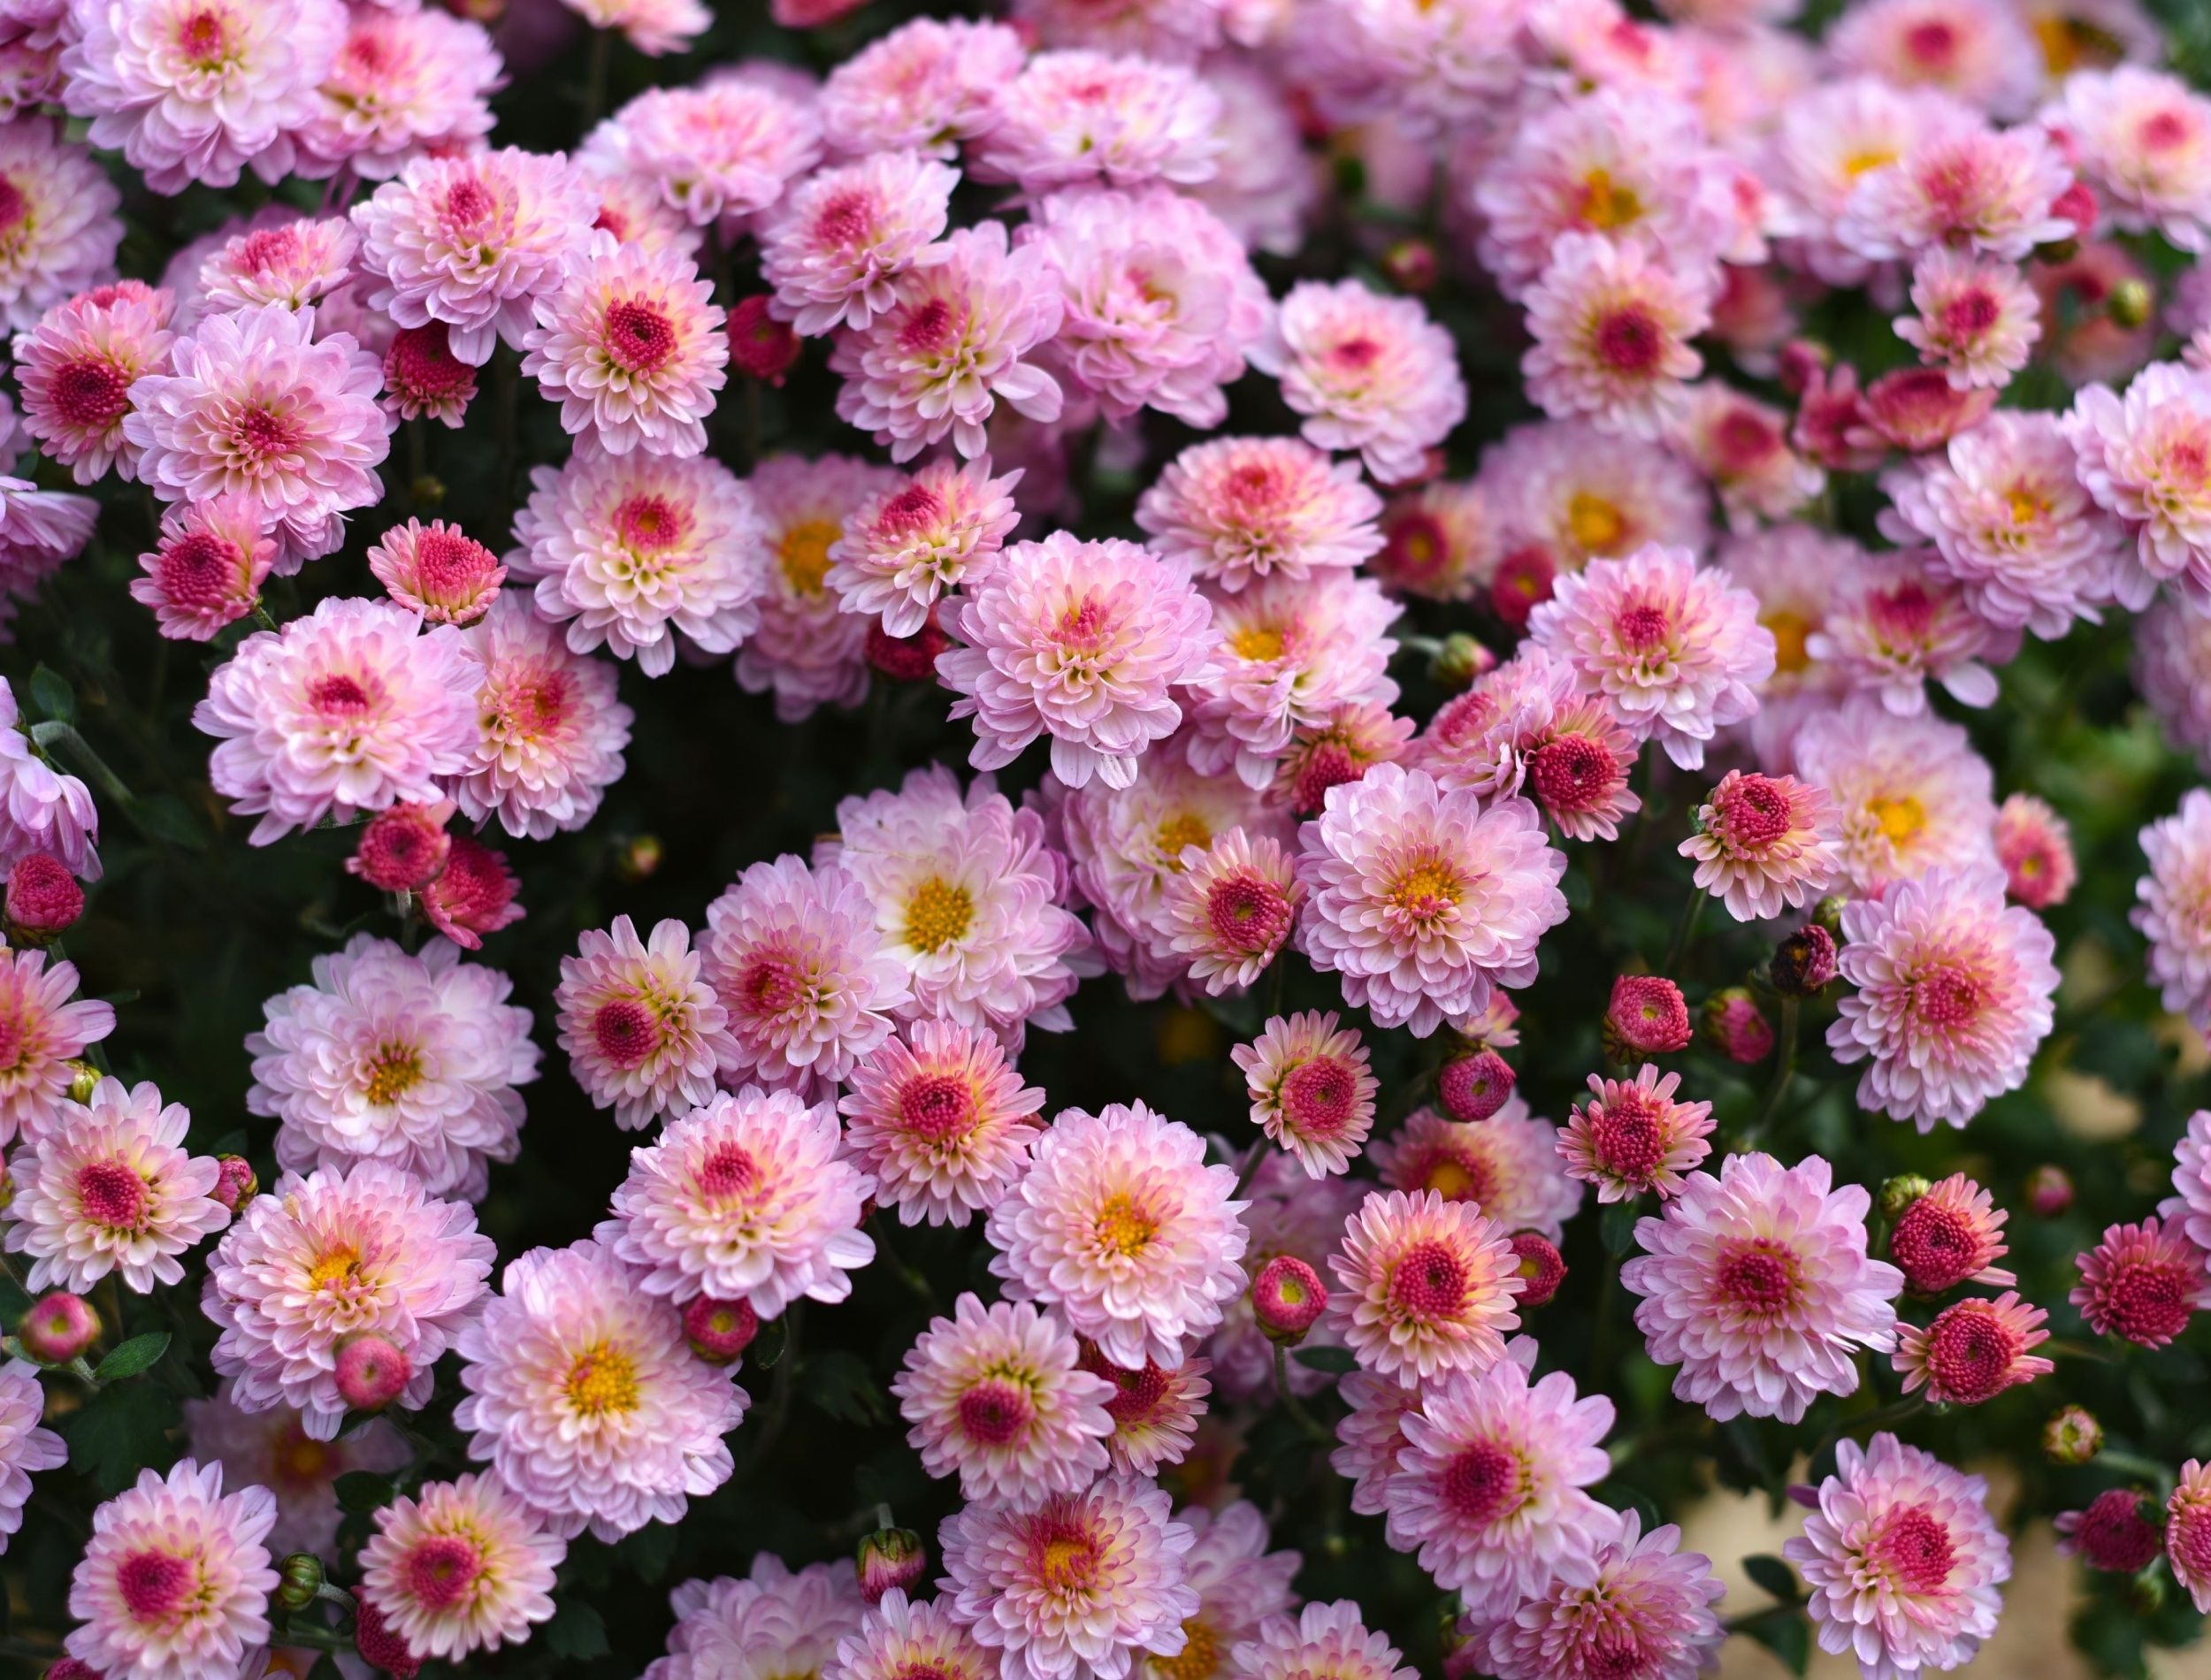 Gigi Pink Chrysanthemum close up